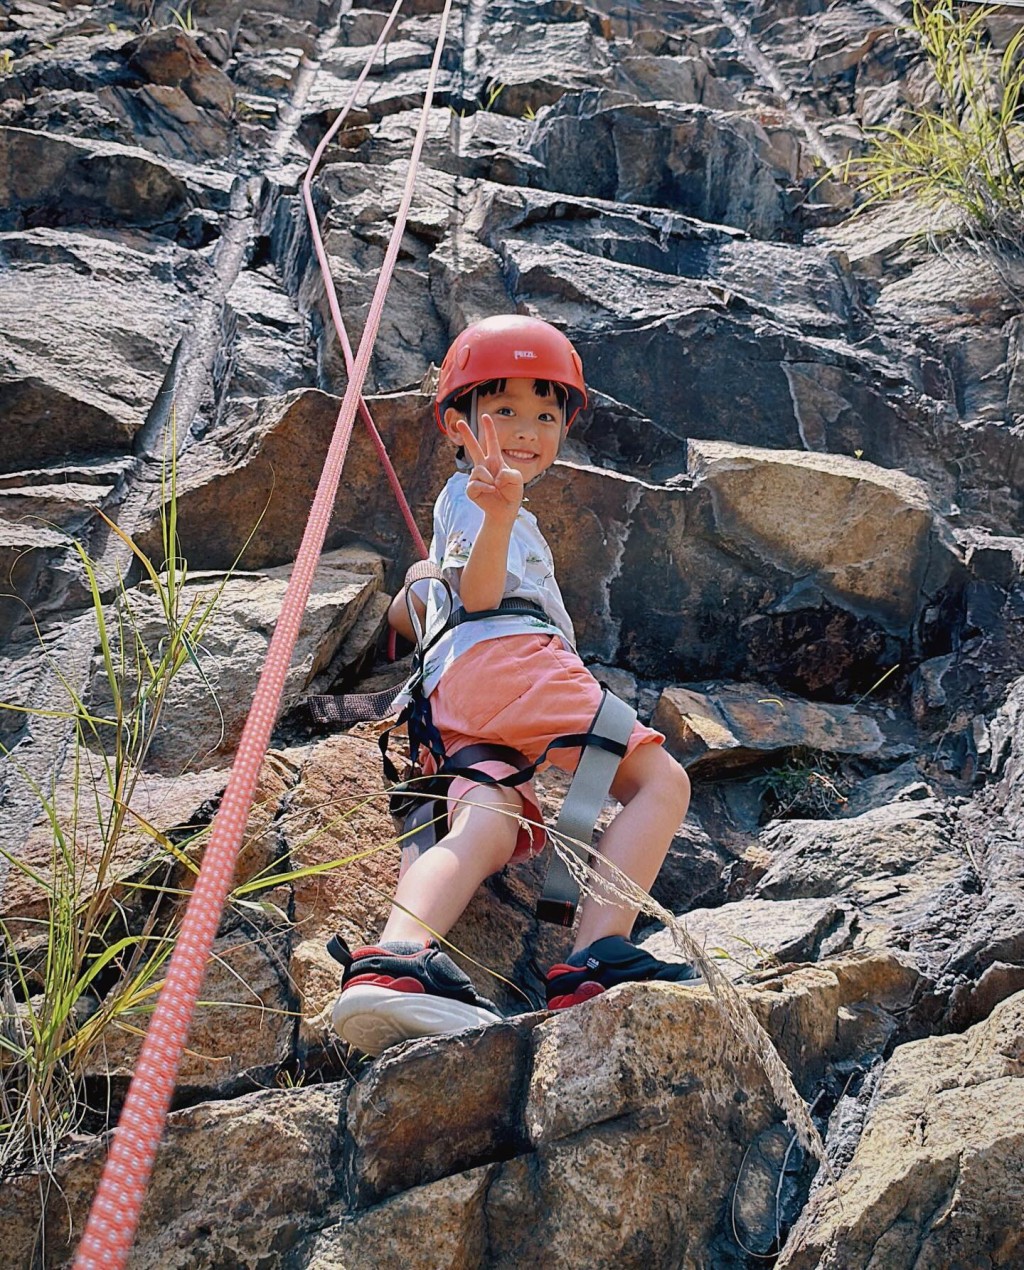 大仔Rafael有勇气玩山上攀岩石。